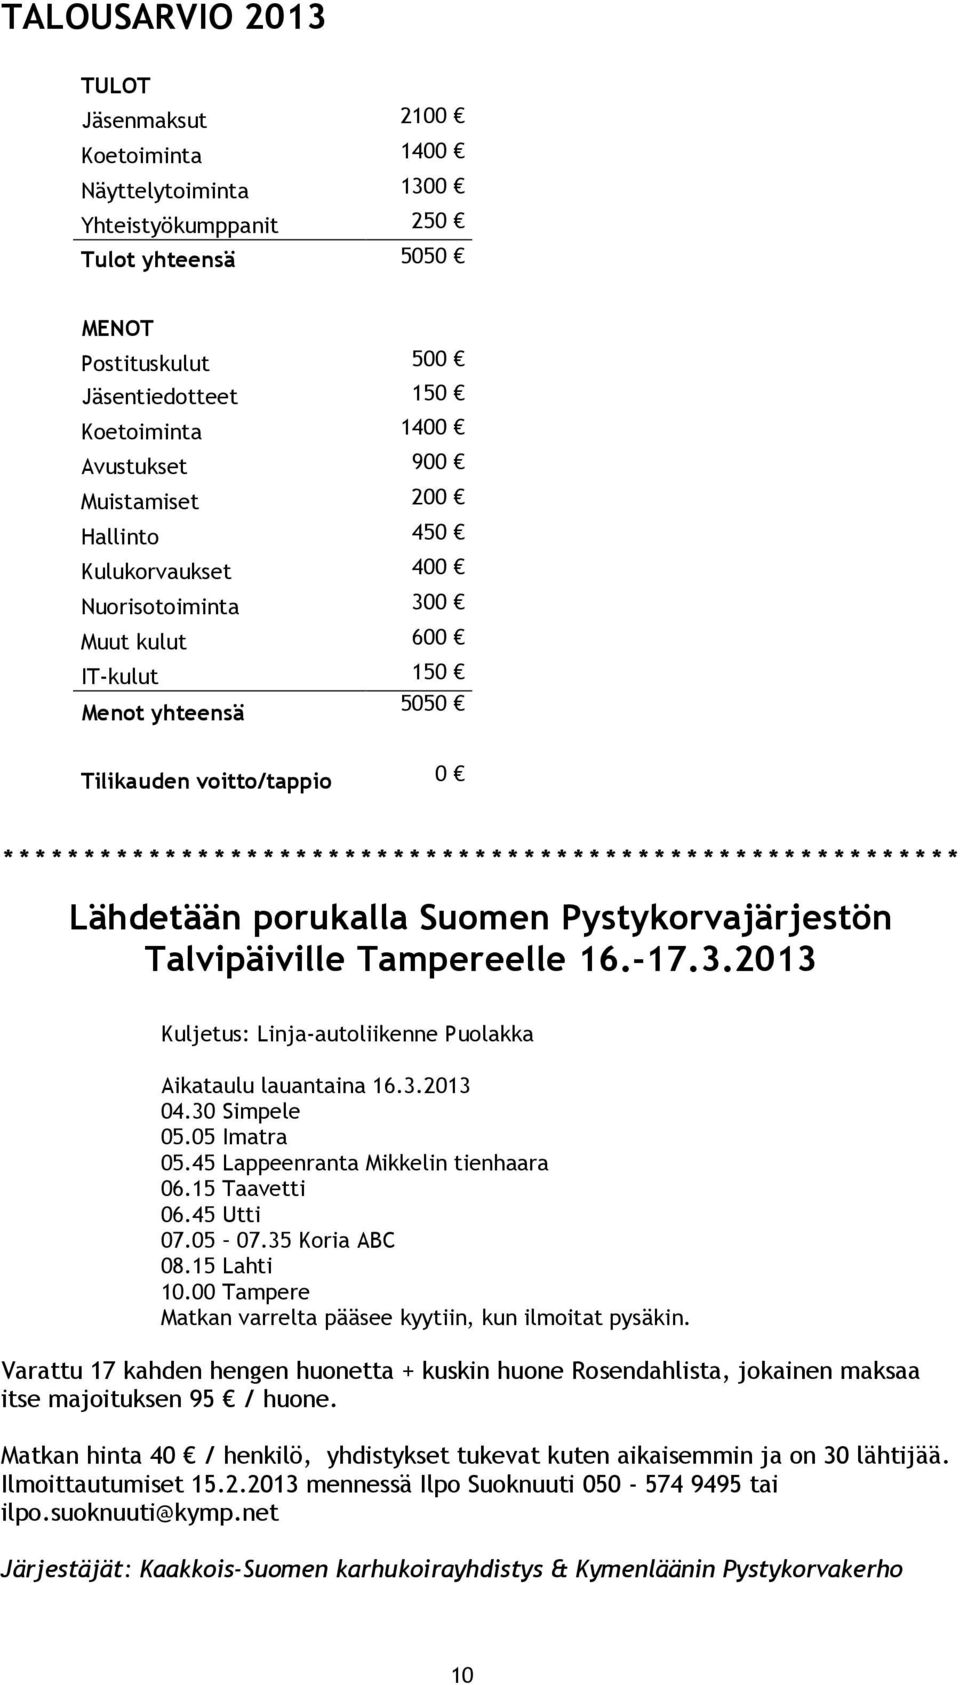 * * * * * * * * * * * * * * * * * * * * * * * * * * * * * * * Lähdetään porukalla Suomen Pystykorvajärjestön Talvipäiville Tampereelle 16.-17.3.